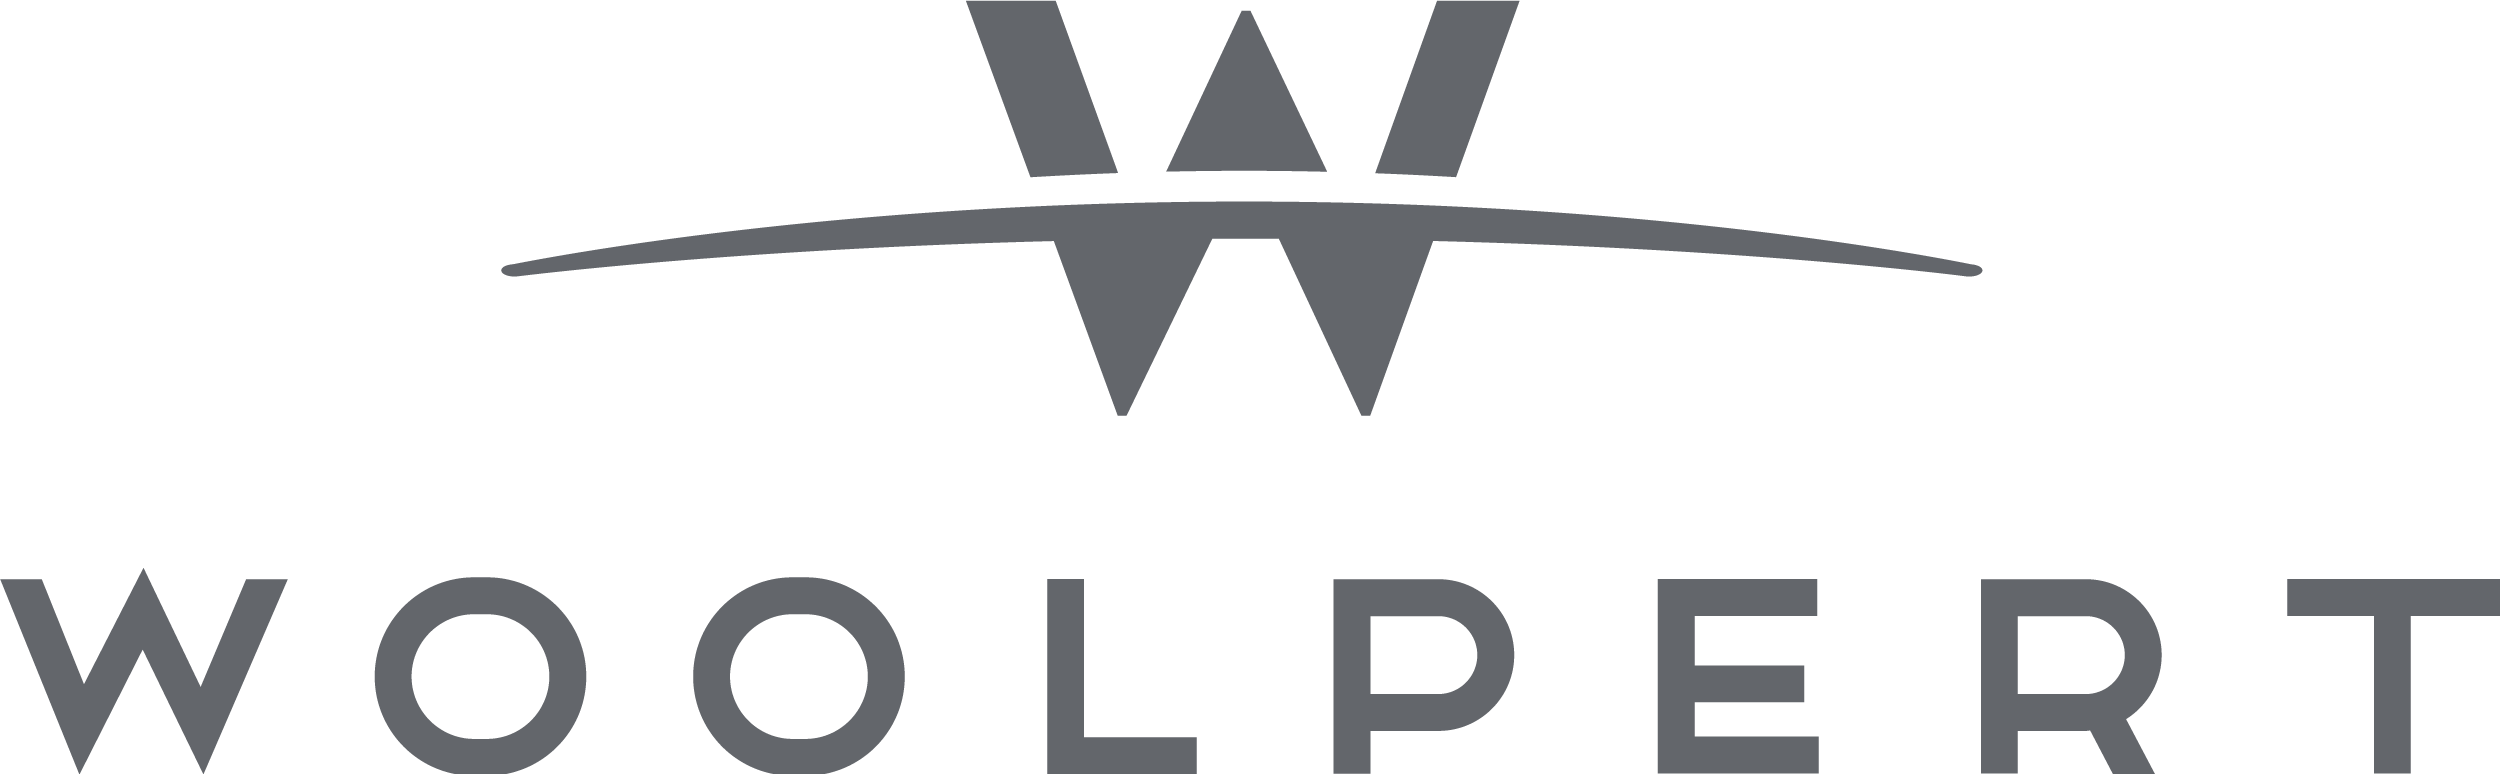 Logotipo de Woolpert